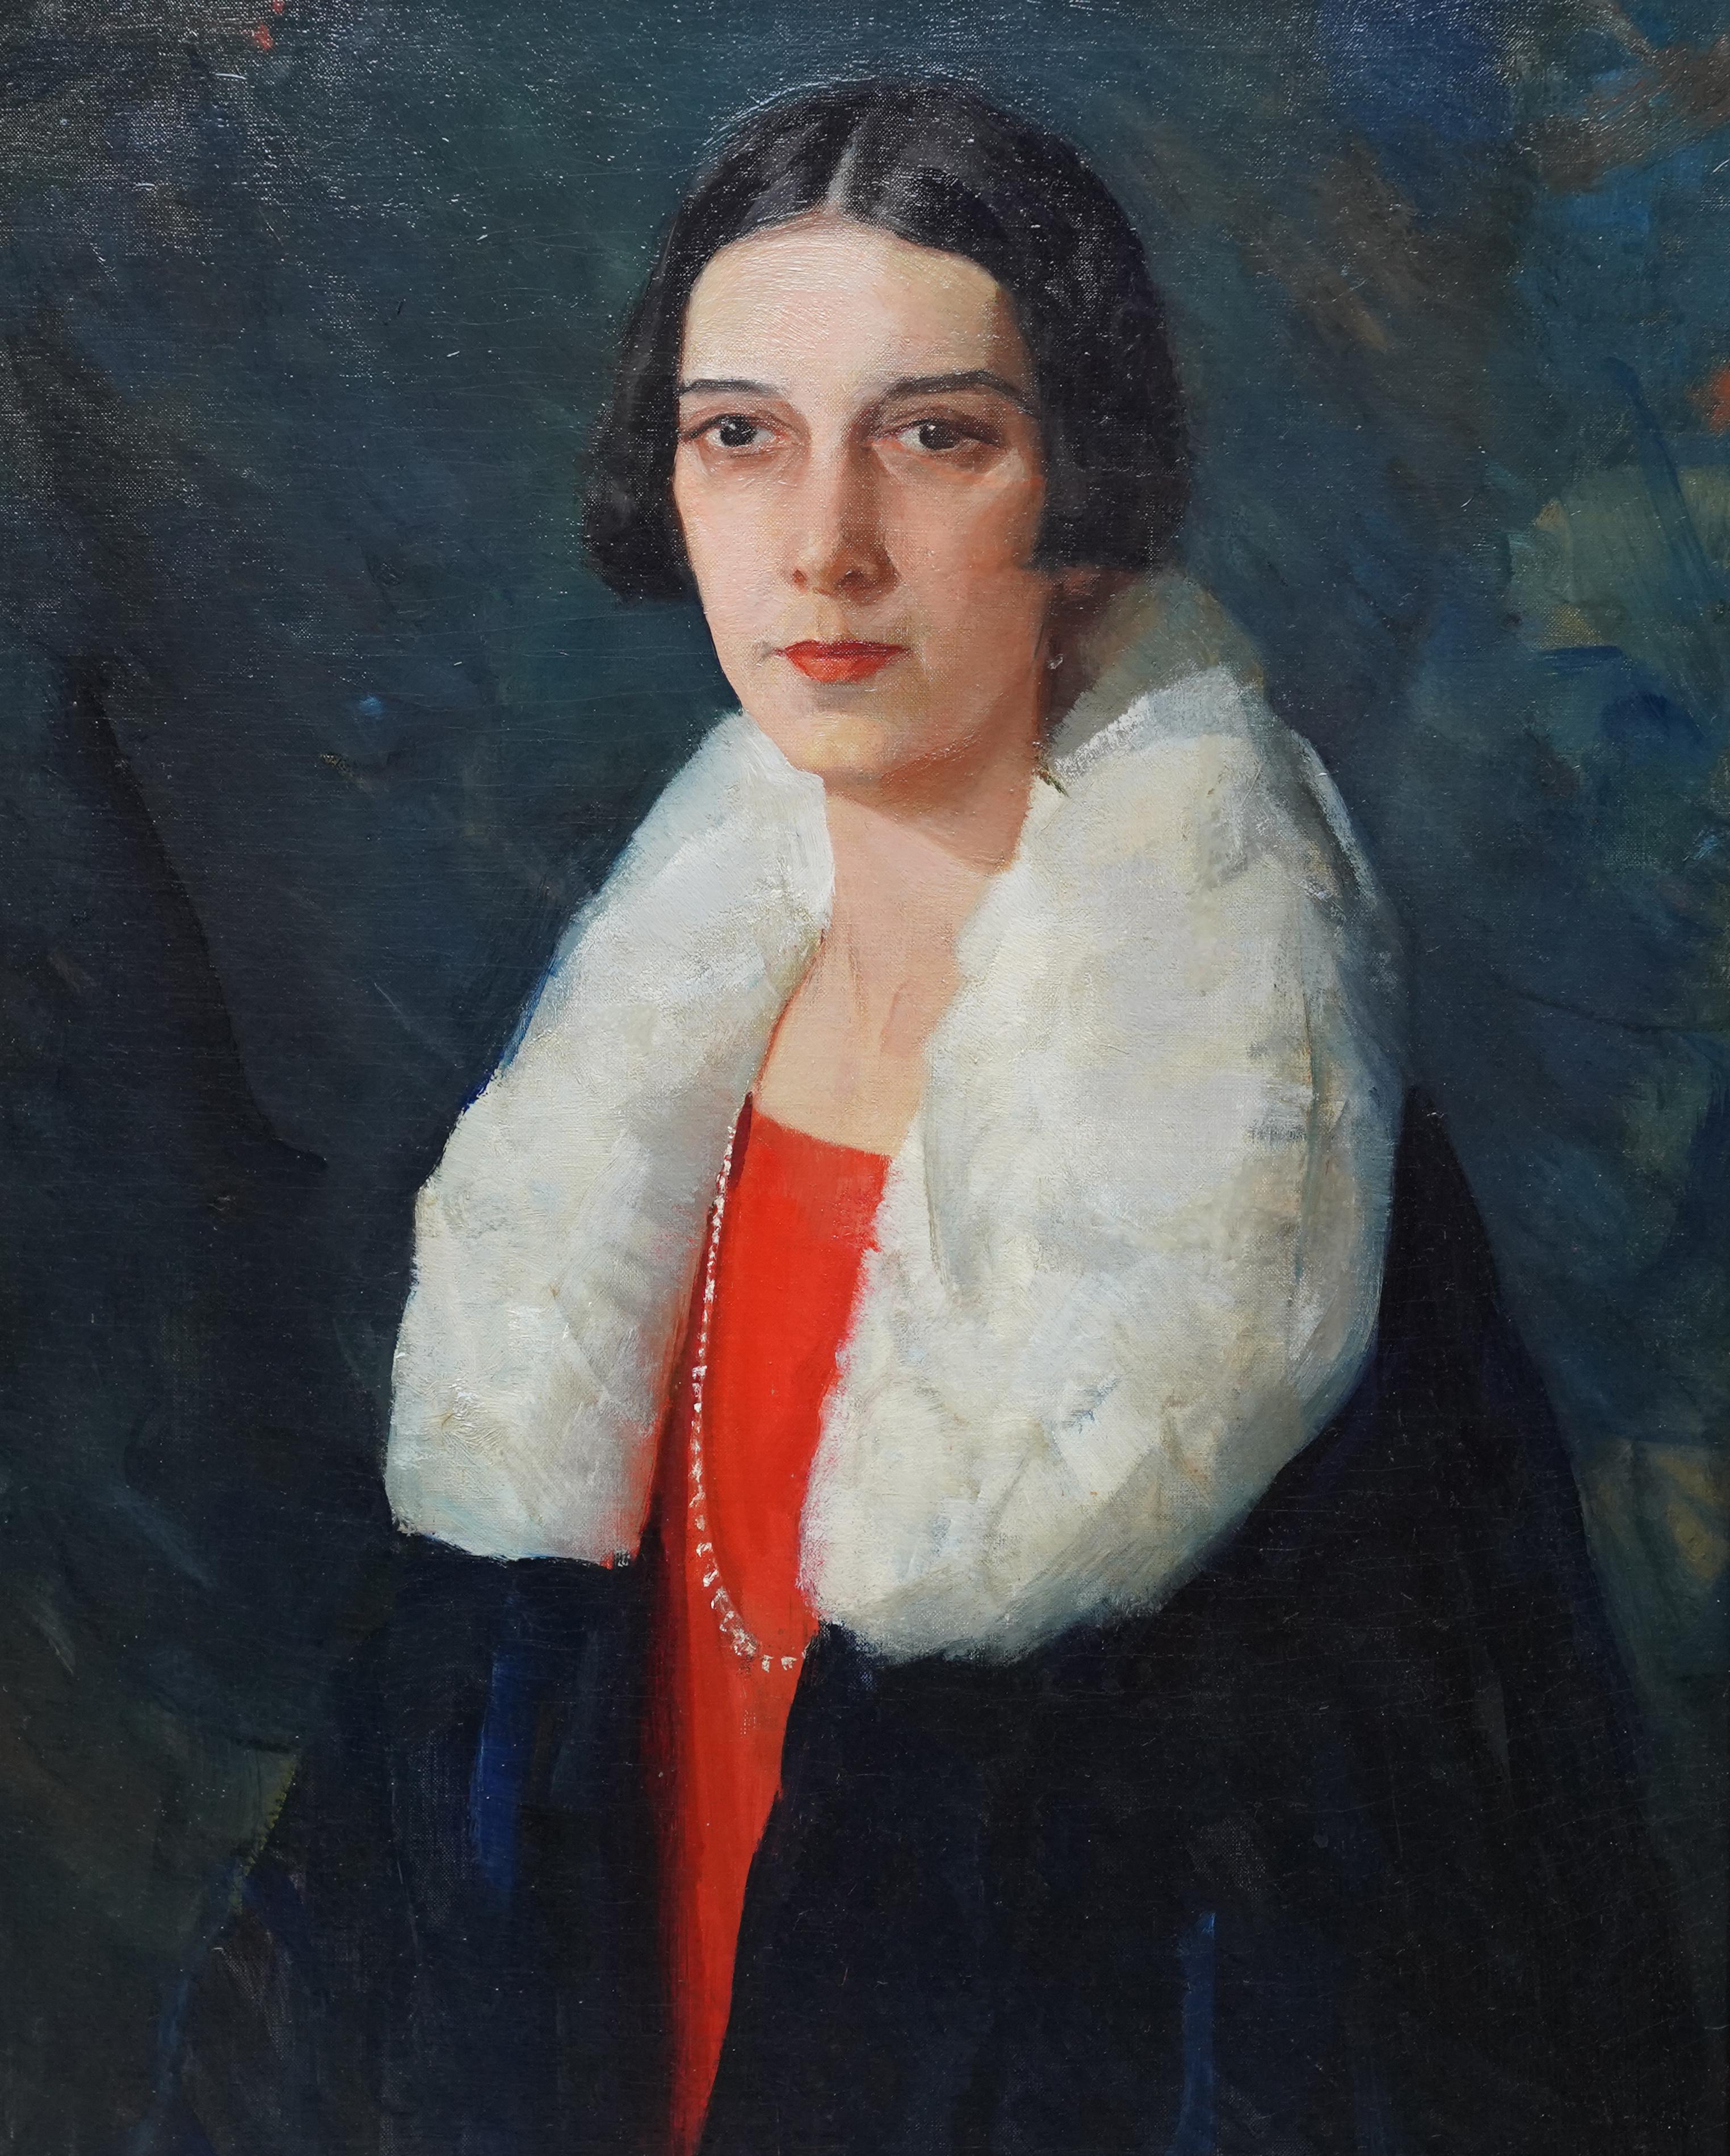 Der amerikanische Künstler Henry R. Rittenberg malte dieses schöne Ölgemälde im Art déco-Stil der 1920er Jahre. Das Gemälde ist ein stehendes, halblanges Porträt einer Dame in einem schwarzen Mantel mit weißem Pelzkragen über einem roten Kleid und